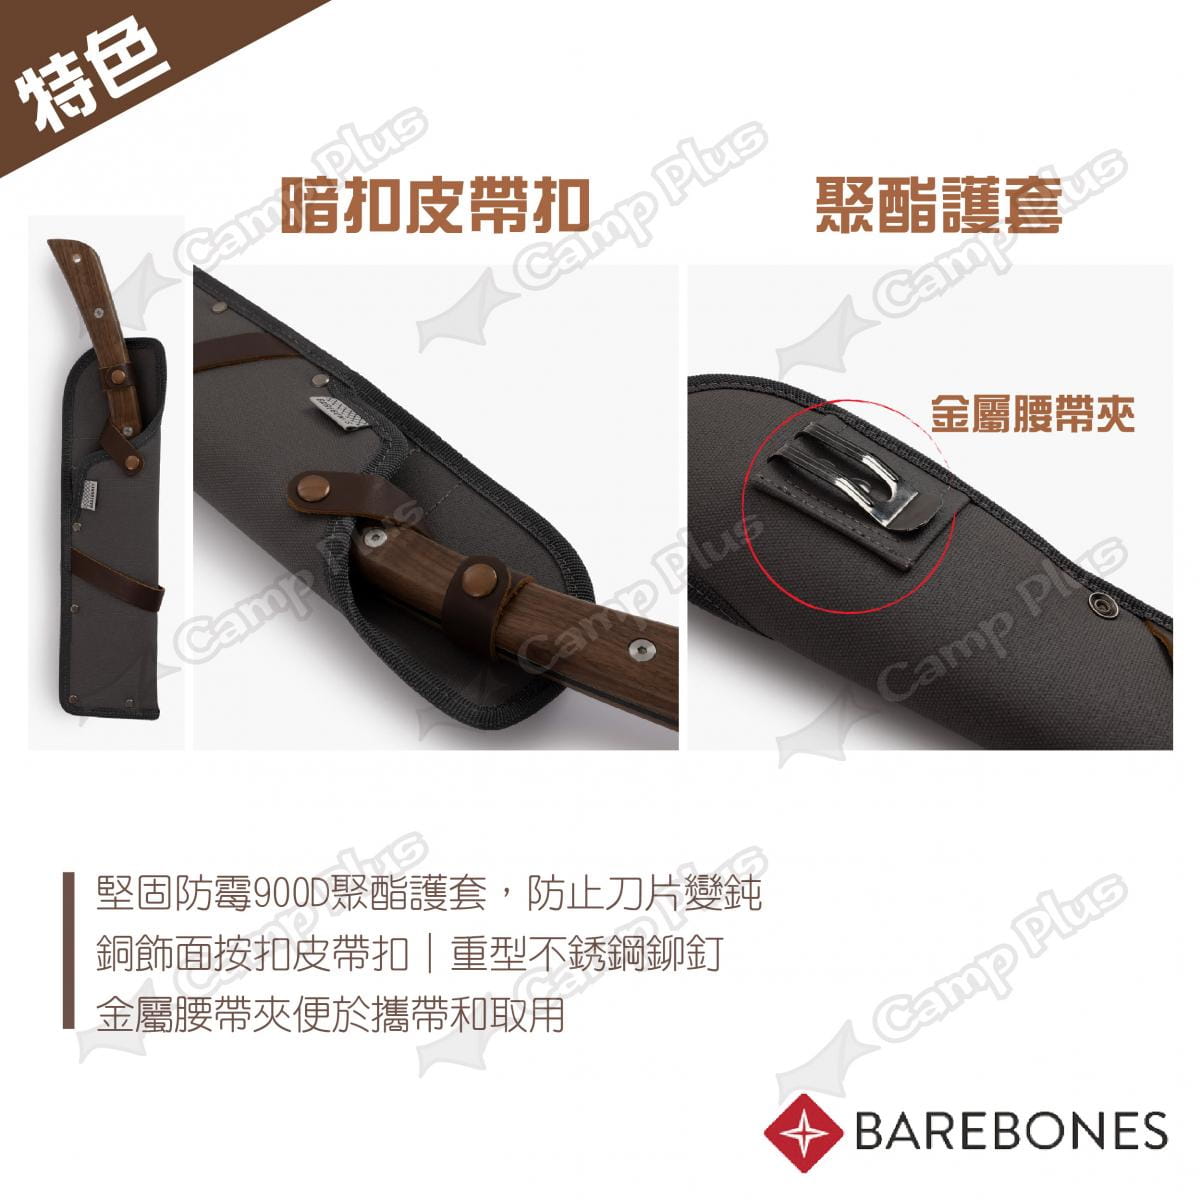 【Barebones】日式鍛造短柴刀_HMS-2126 (悠遊戶外) 4